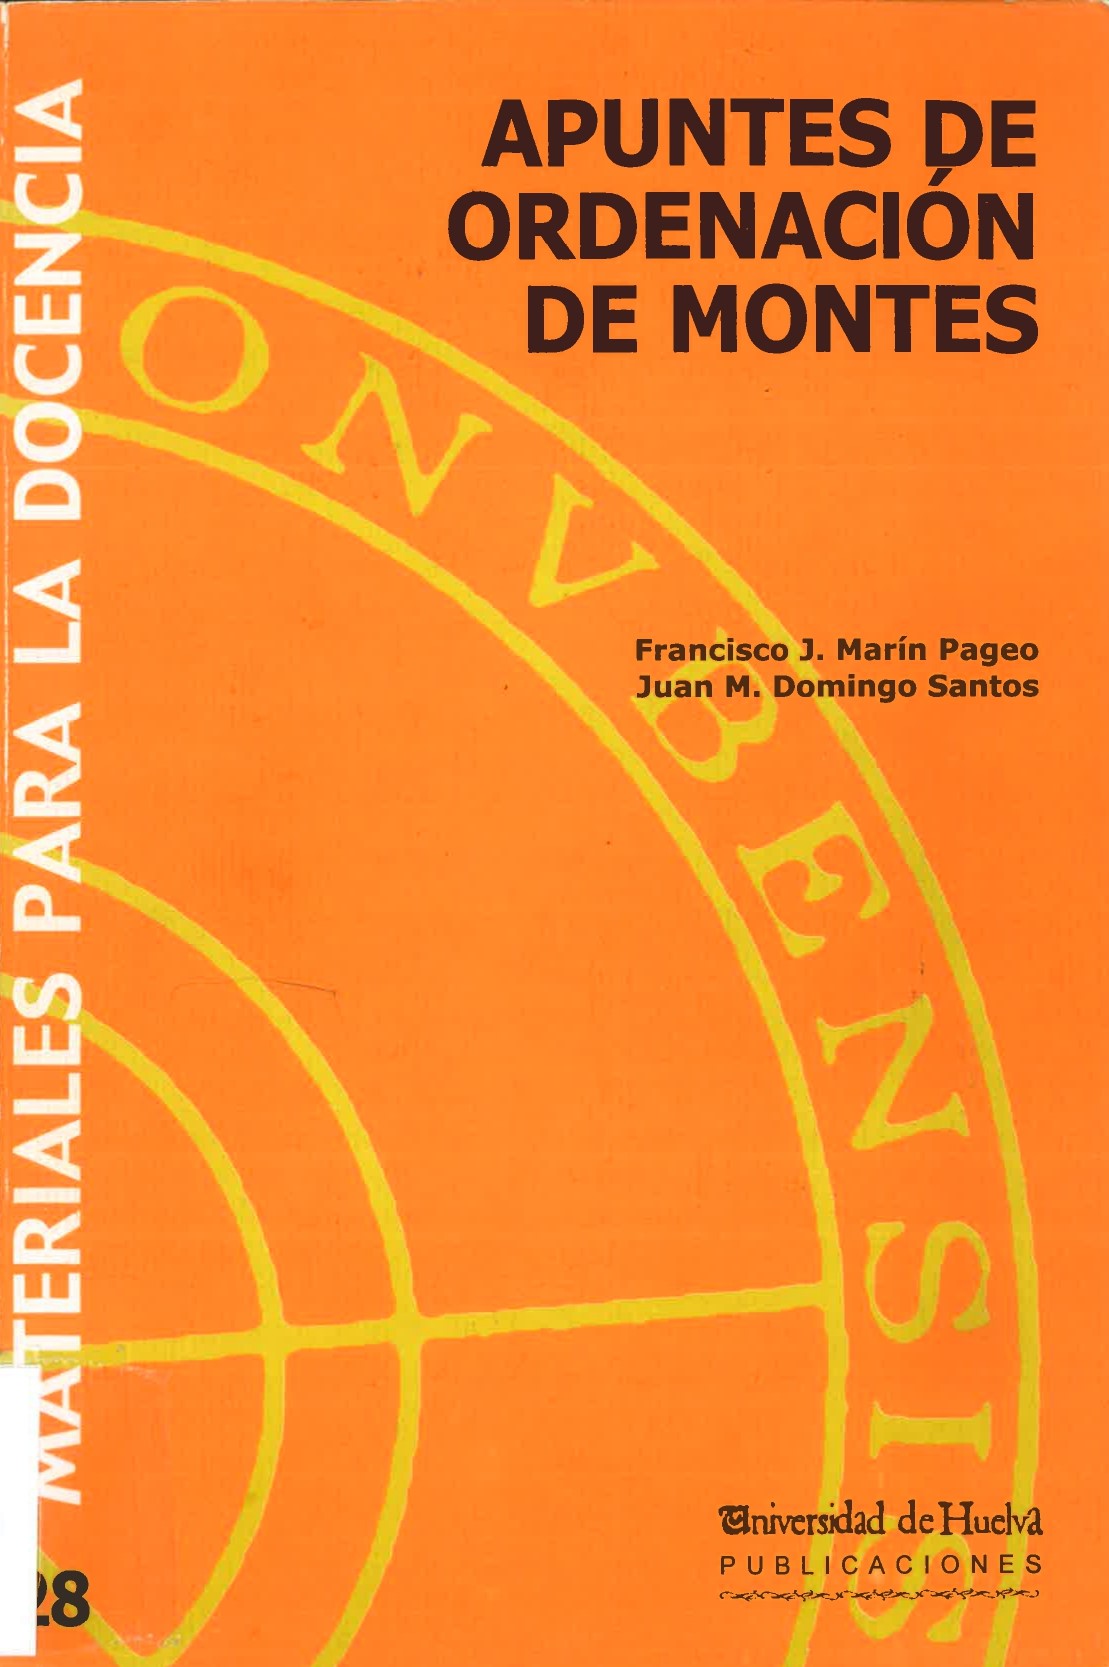 Imagen de portada del libro Apuntes de ordenación de montes